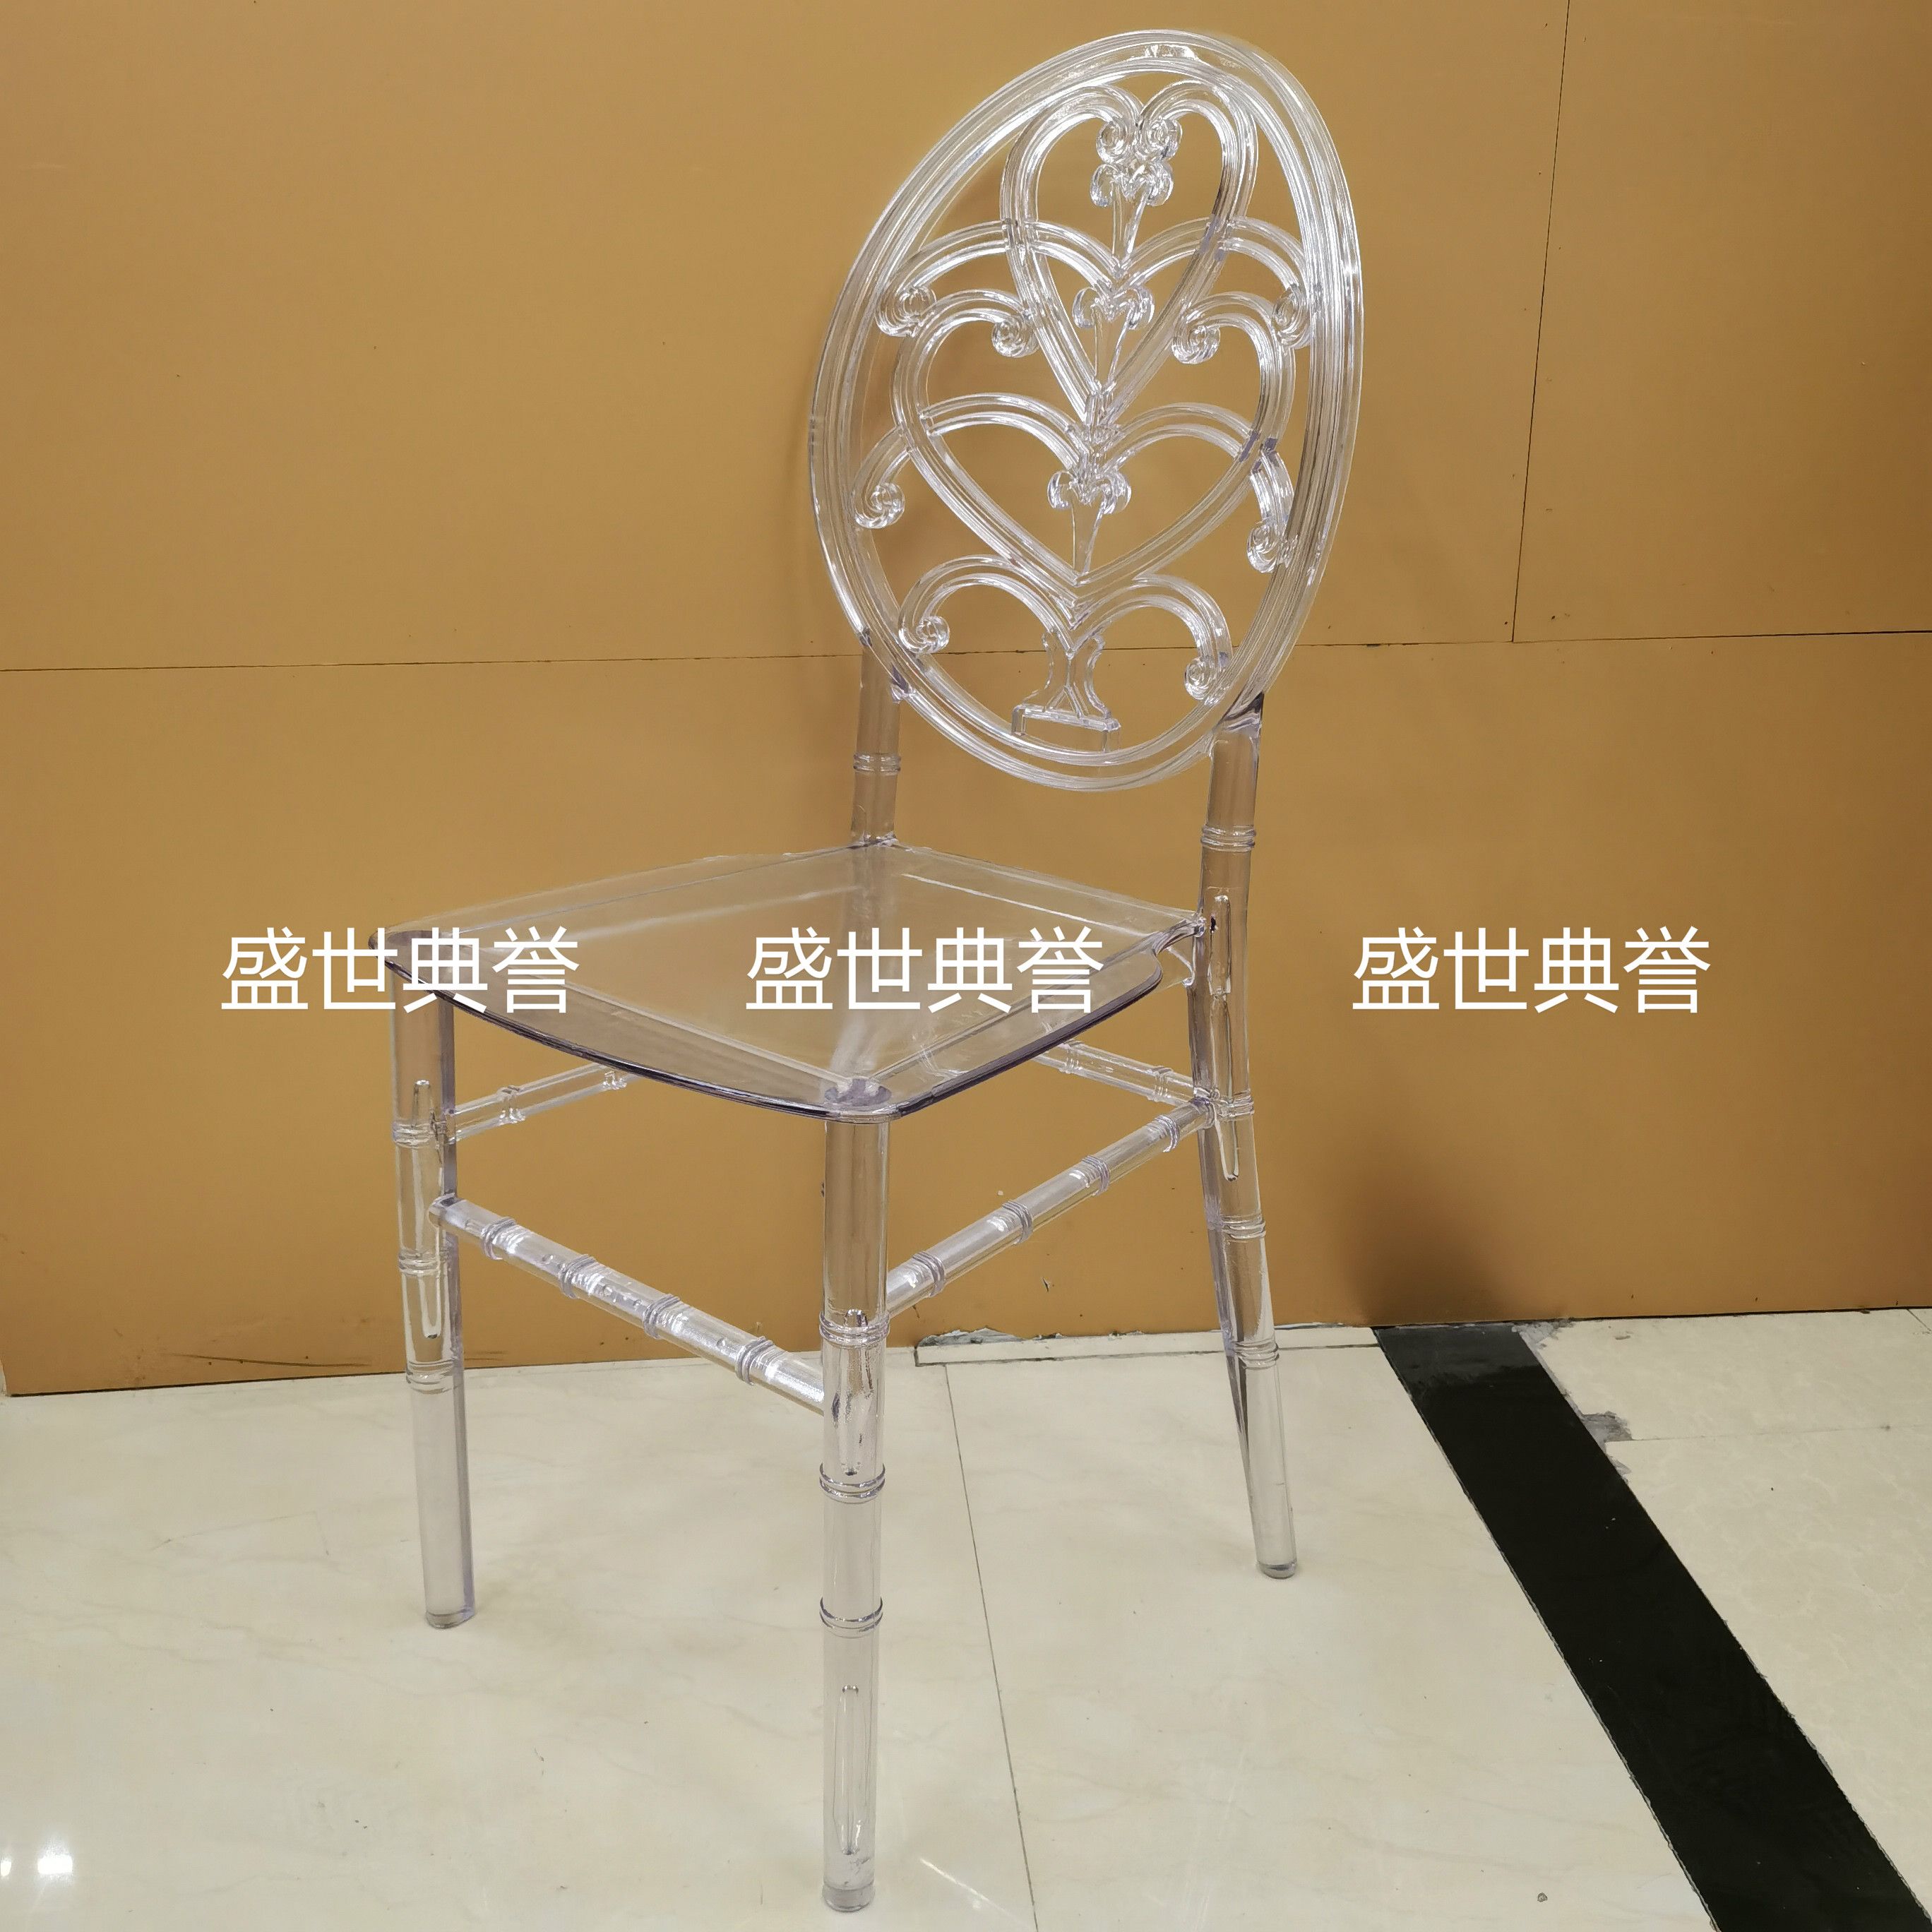 广州外贸户外透明竹节椅欧式婚礼亚克力椅子酒店宴会厅主题婚礼餐椅